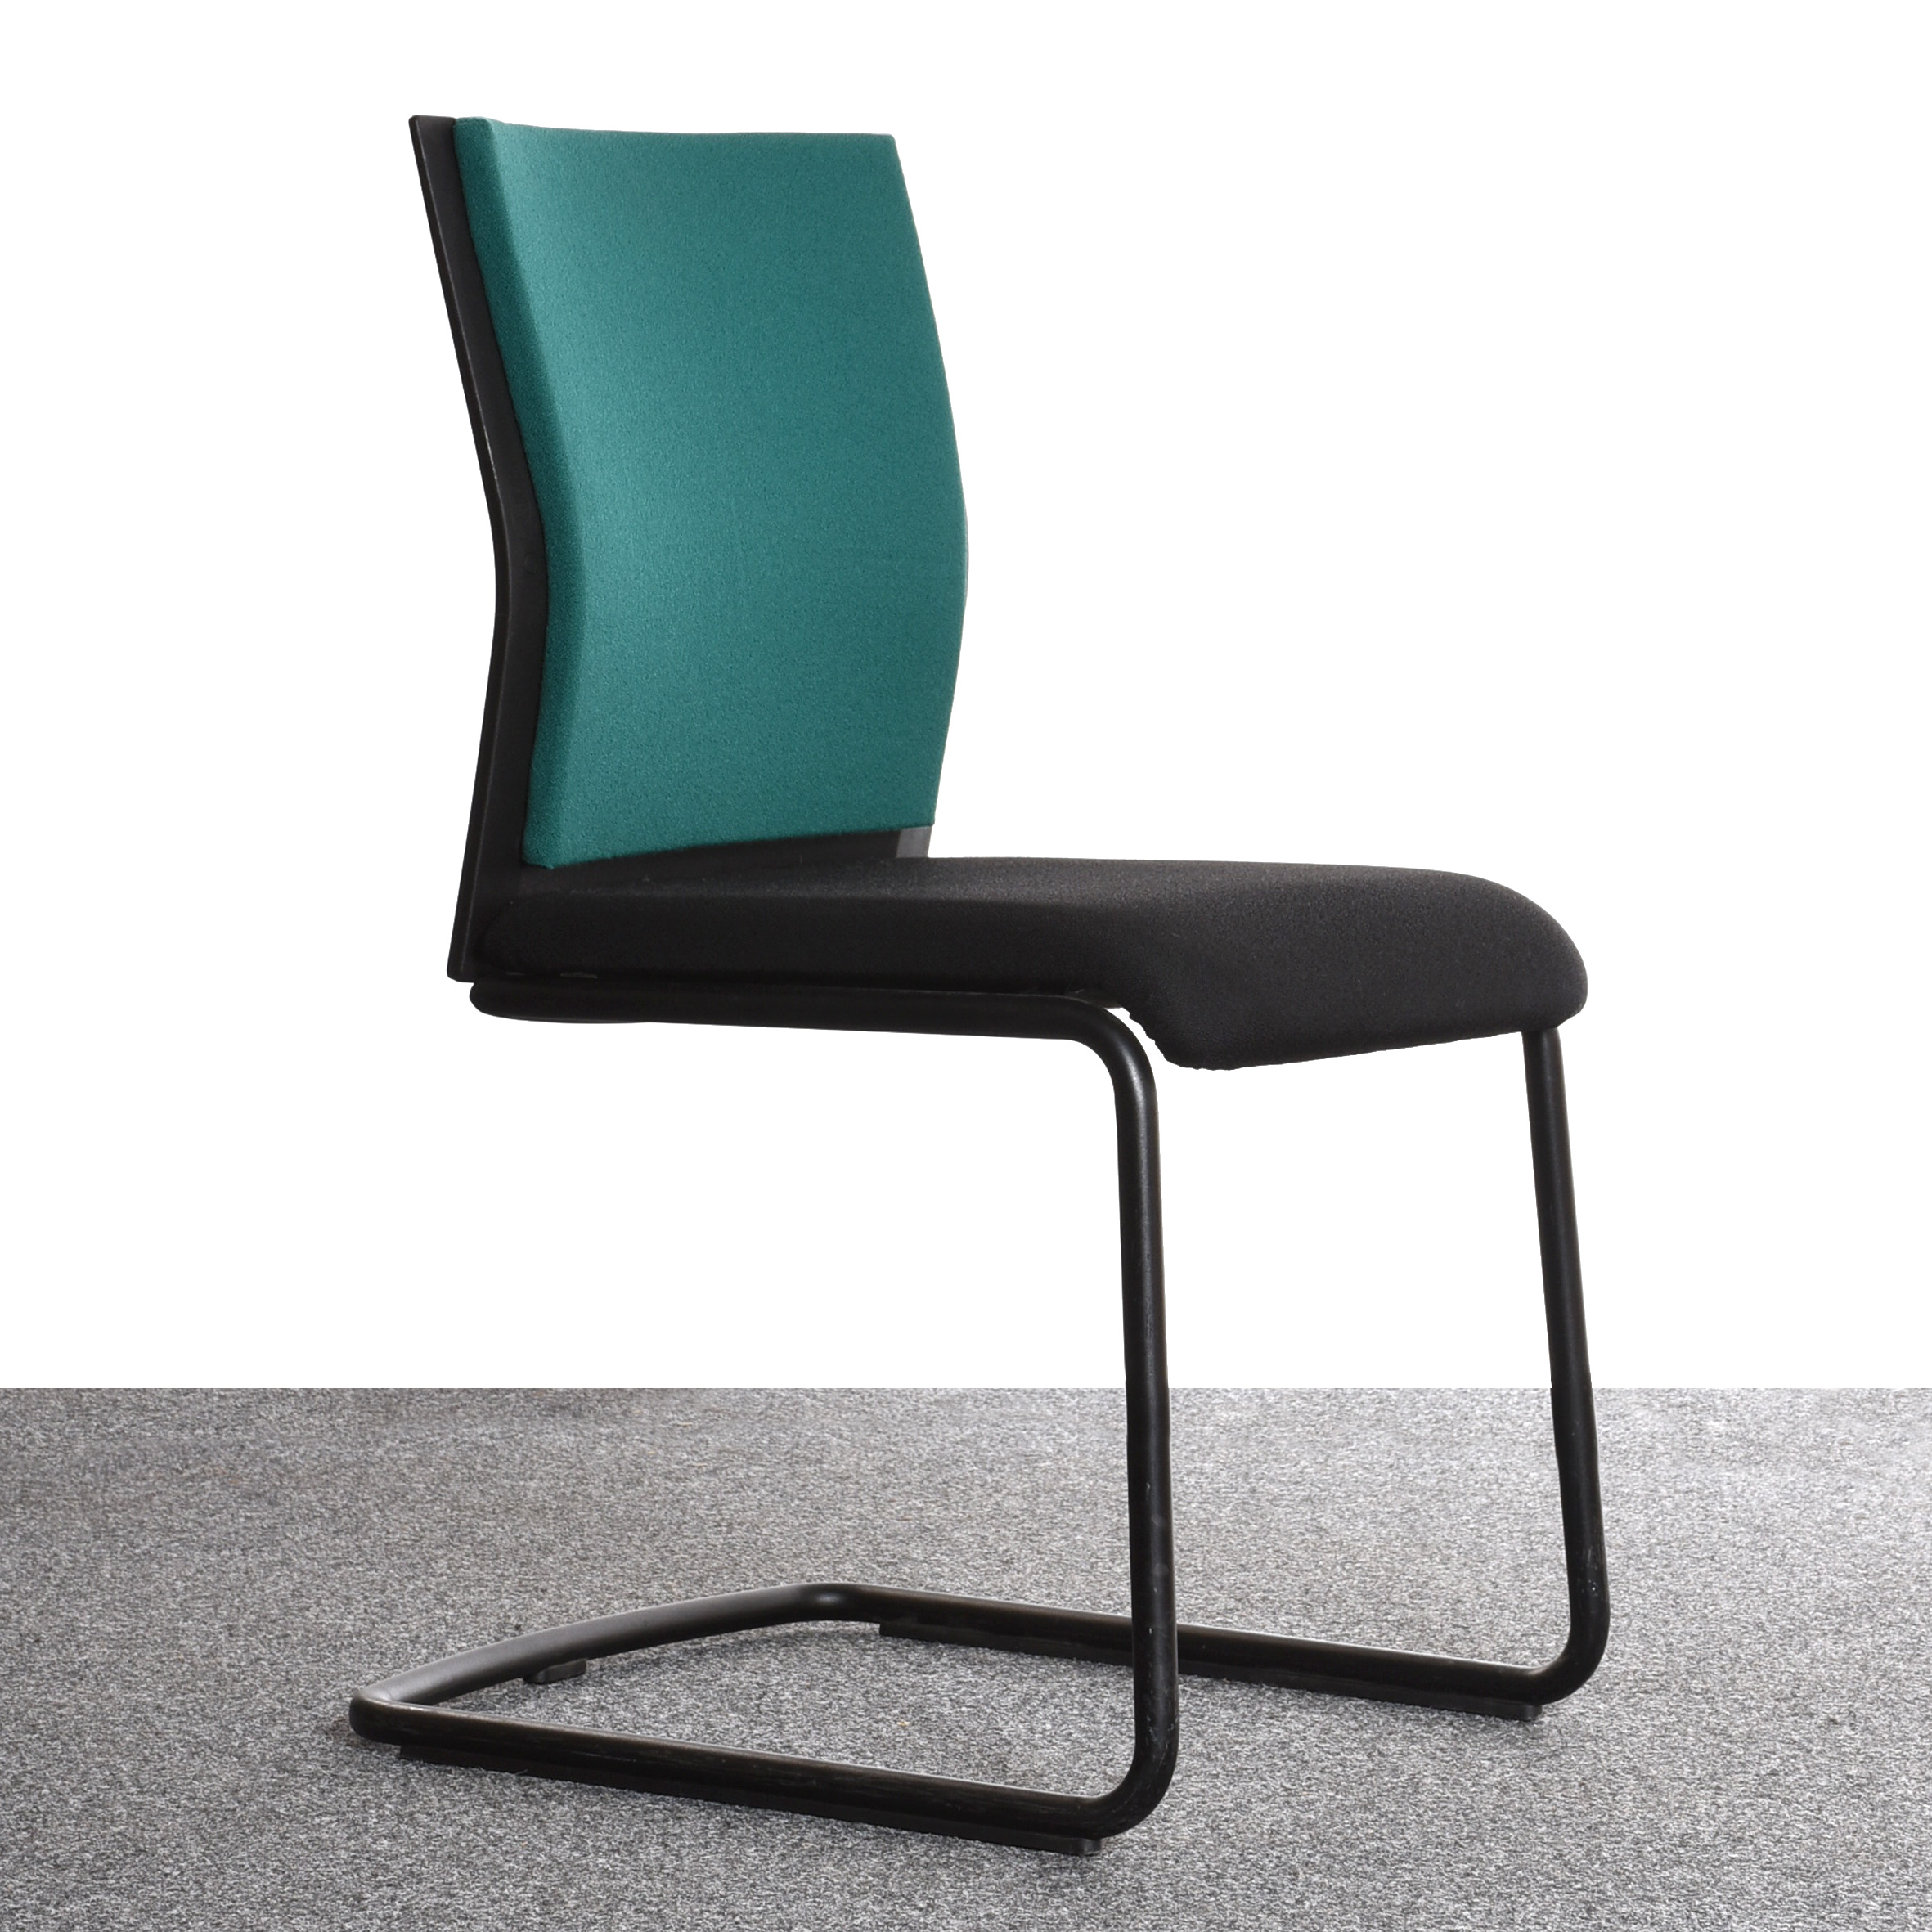 Steelcase Stuhl, Freischwinger, schwarz, grün, gebraucht